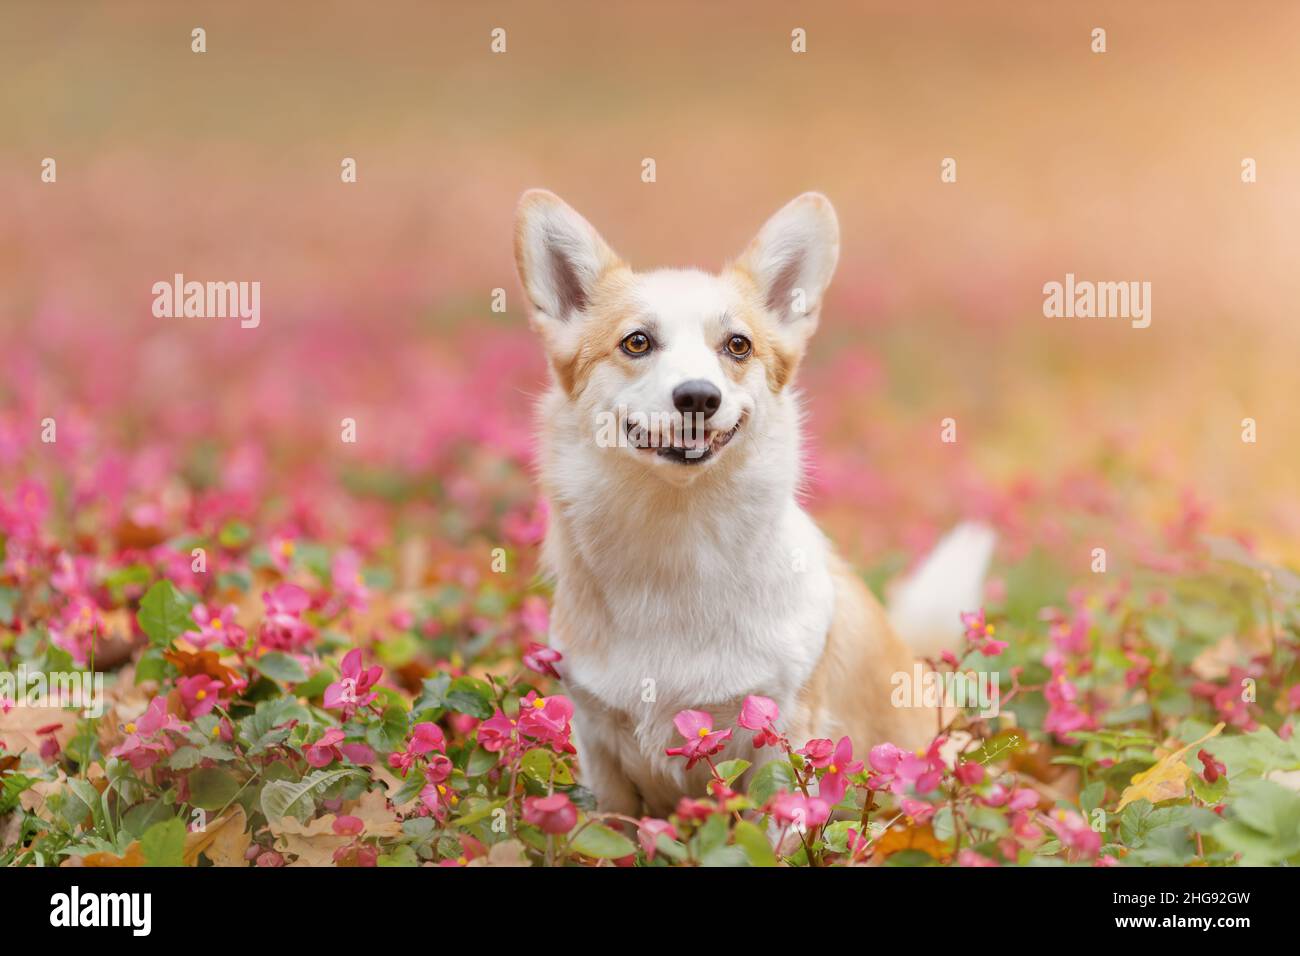 Potrait de corgi gallois souriant heureux chien de race pembroke parmi les fleurs roses tendres dans la nature Banque D'Images